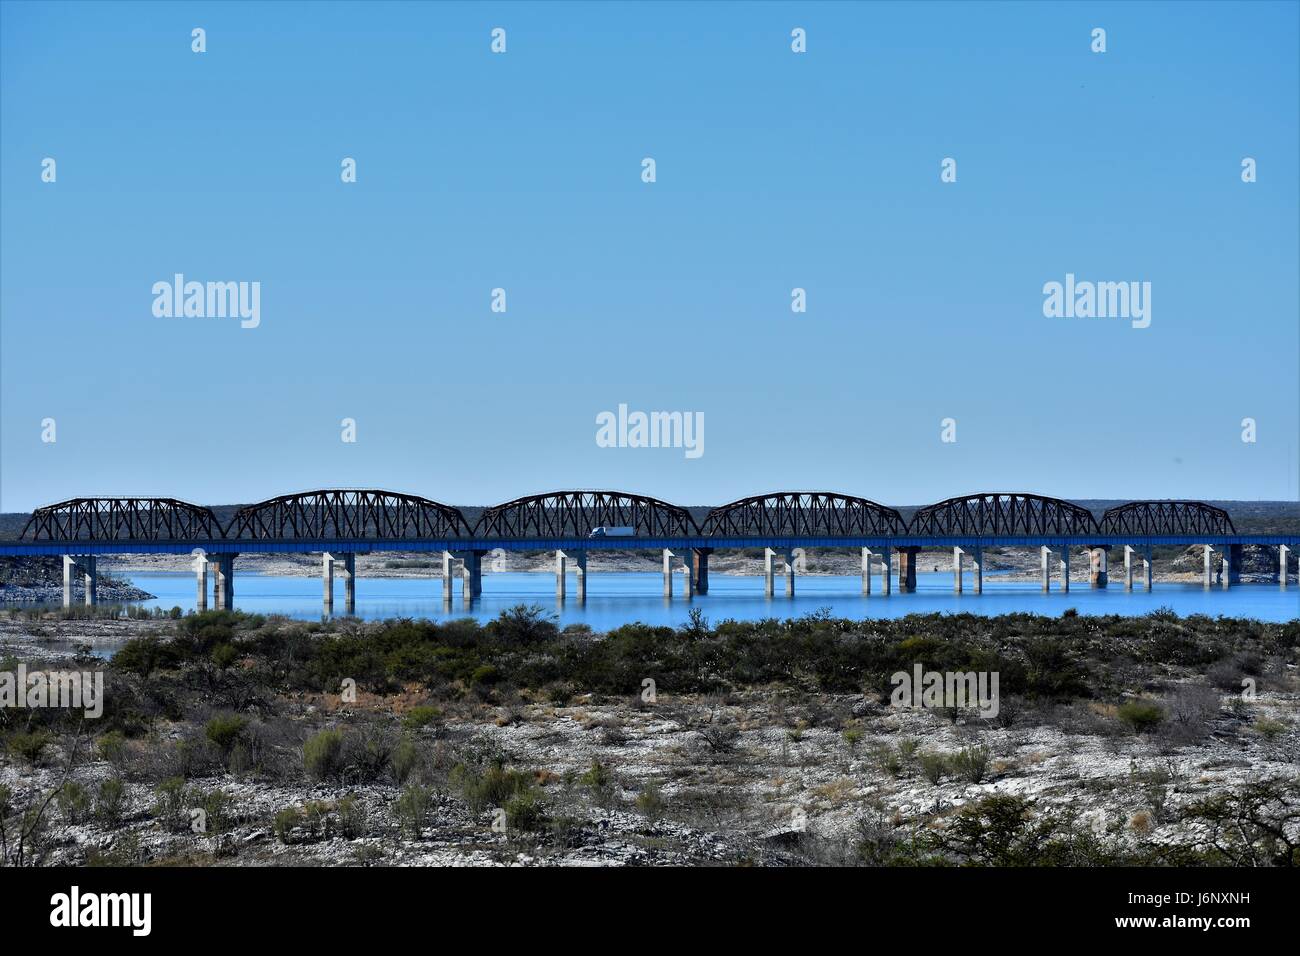 Bridges over Lake Amistad Stock Photo